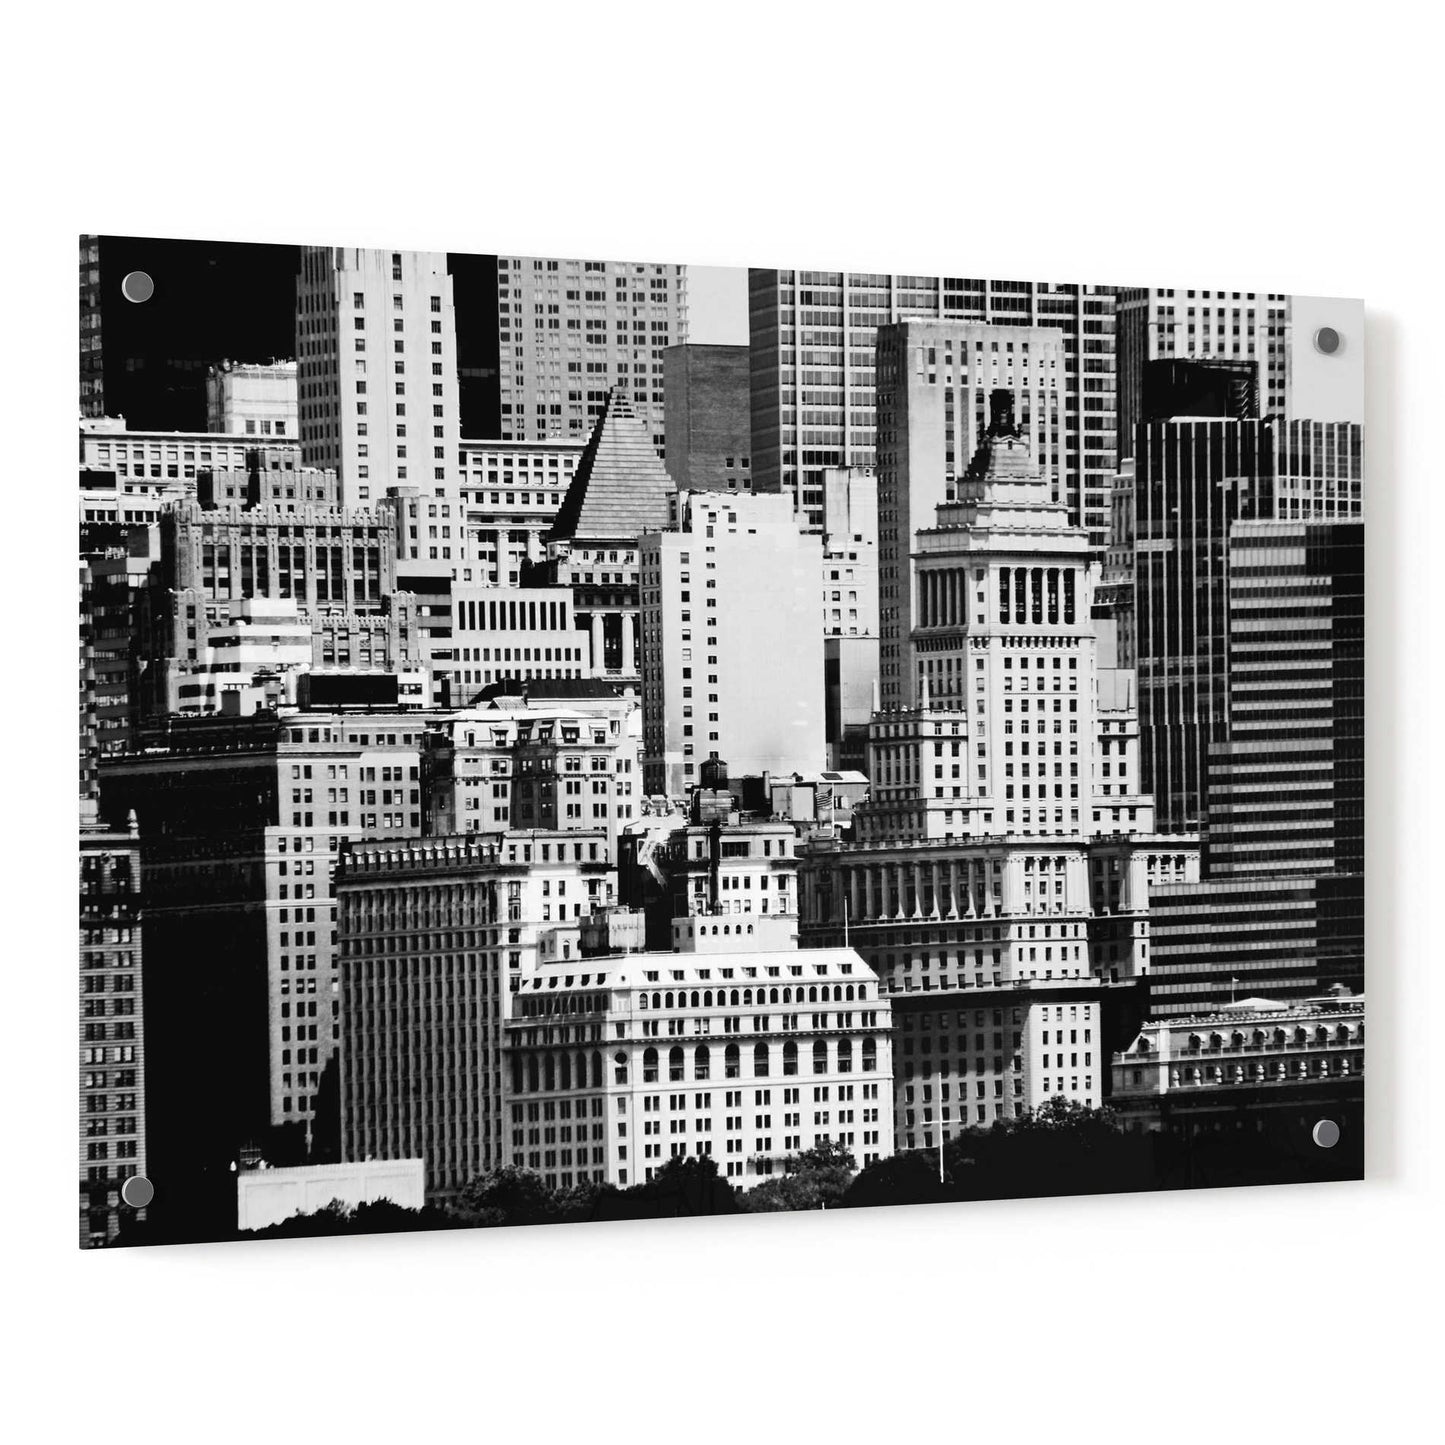 Epic Art 'NYC Skyline IX' by Jeff Pica, Acrylic Glass Wall Art,36x24